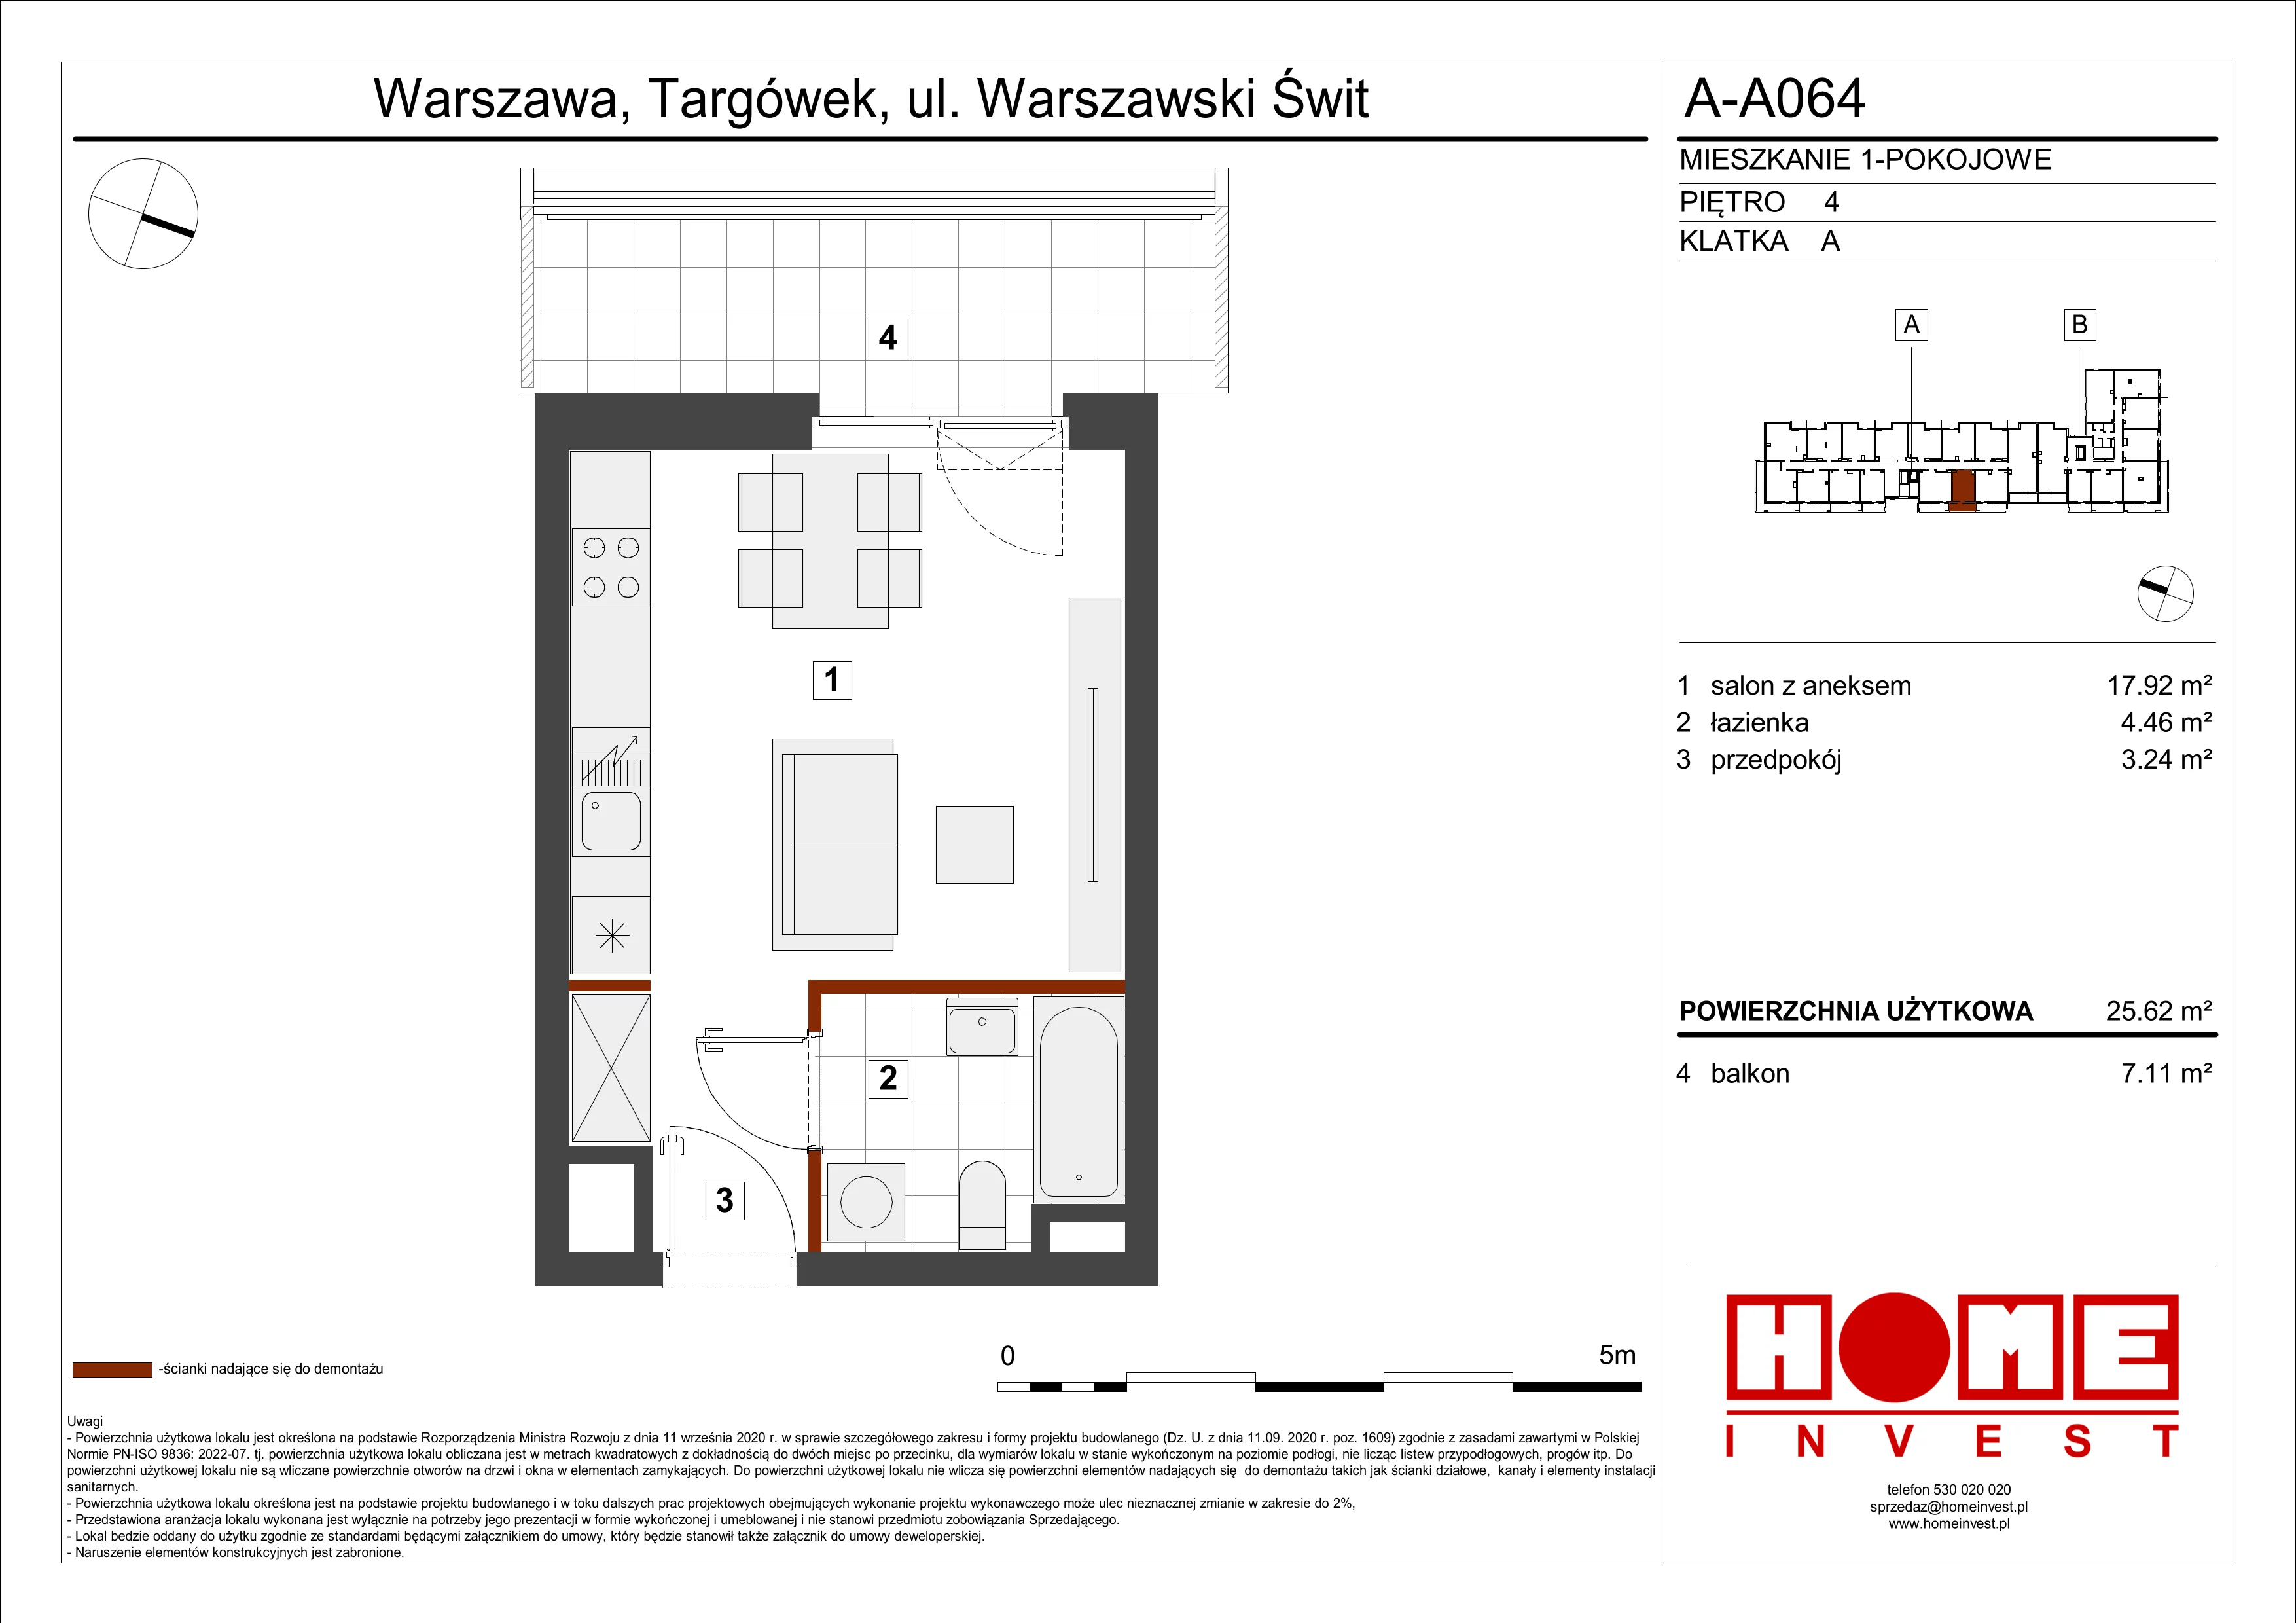 Mieszkanie 25,62 m², piętro 4, oferta nr A-A064, Warszawski Świt, Warszawa, Targówek, Bródno, ul. Warszawski Świt 5